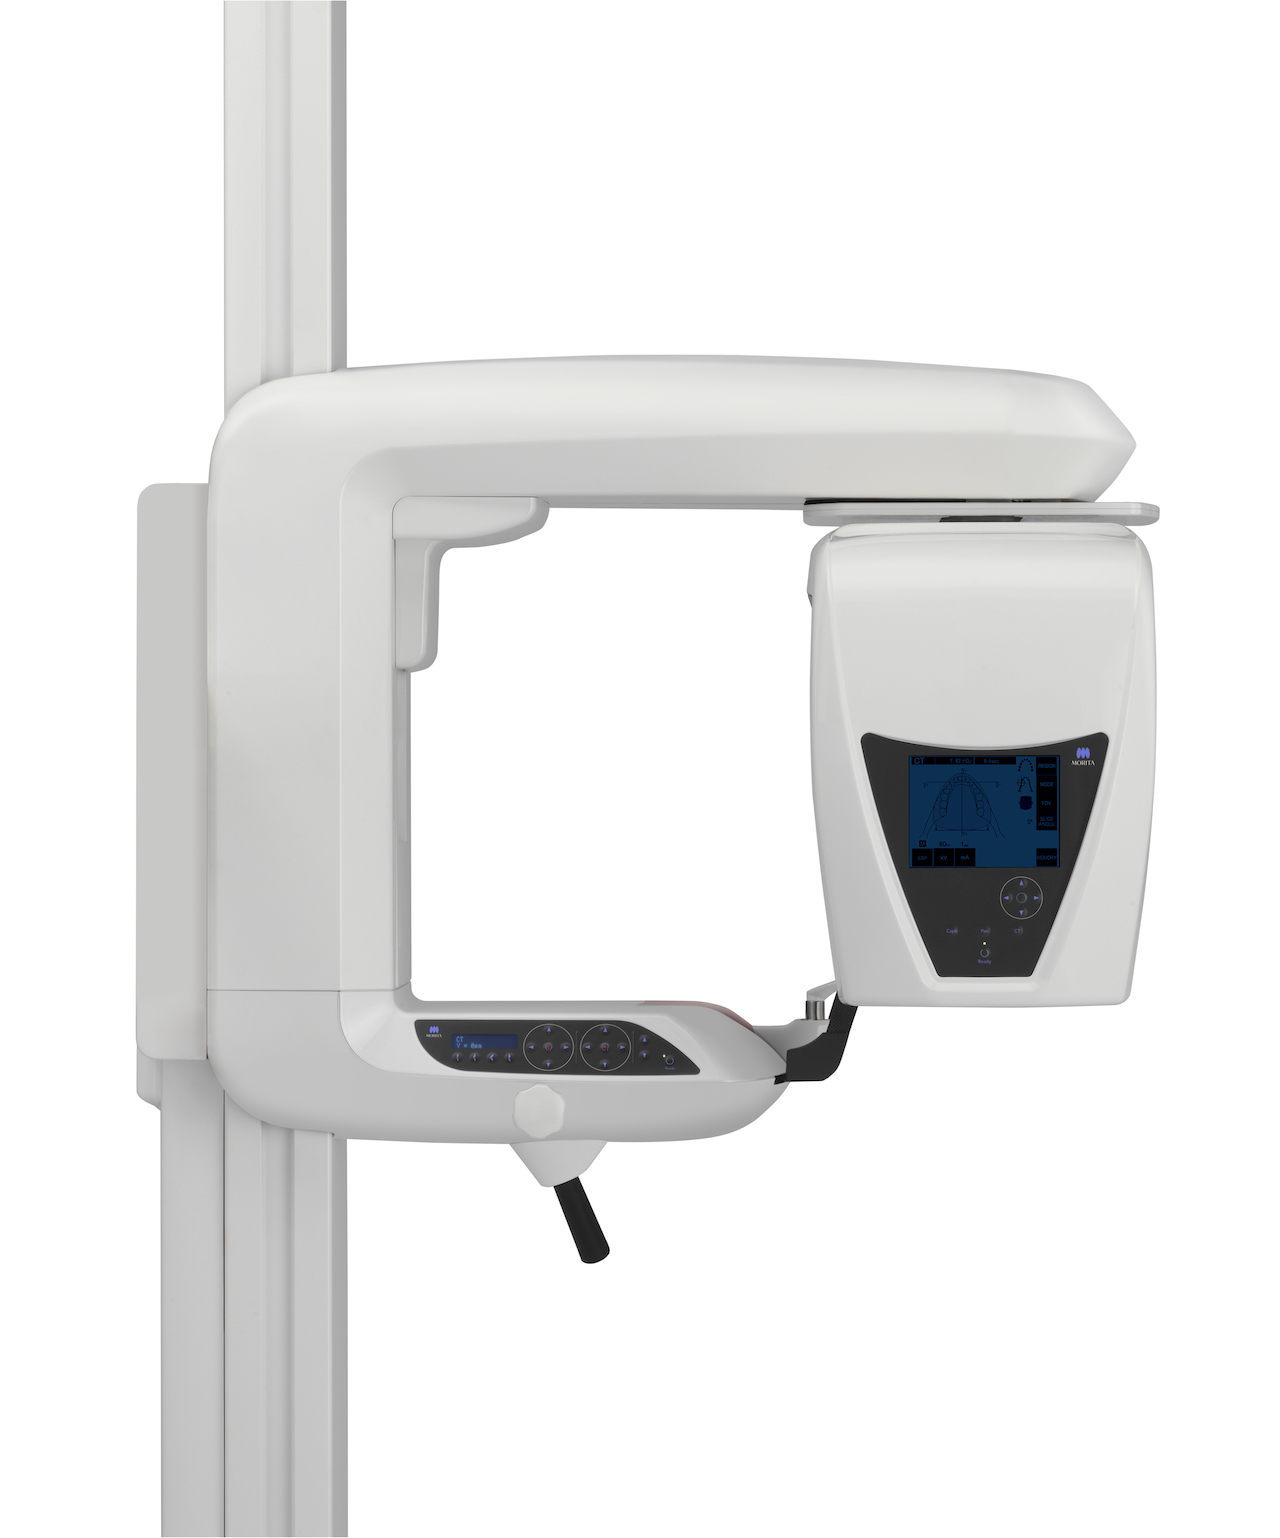 Abb. 1: Morita bietet effiziente 3D-Röntgensysteme für jede Praxis wie den Veraviewepocs R100 (Abb. 1) für Generalisten und den Veraview X800 (Abb. 2) für Spezialisten mit höheren Ansprüchen an die Bildauflösung. (Bilder: Morita)